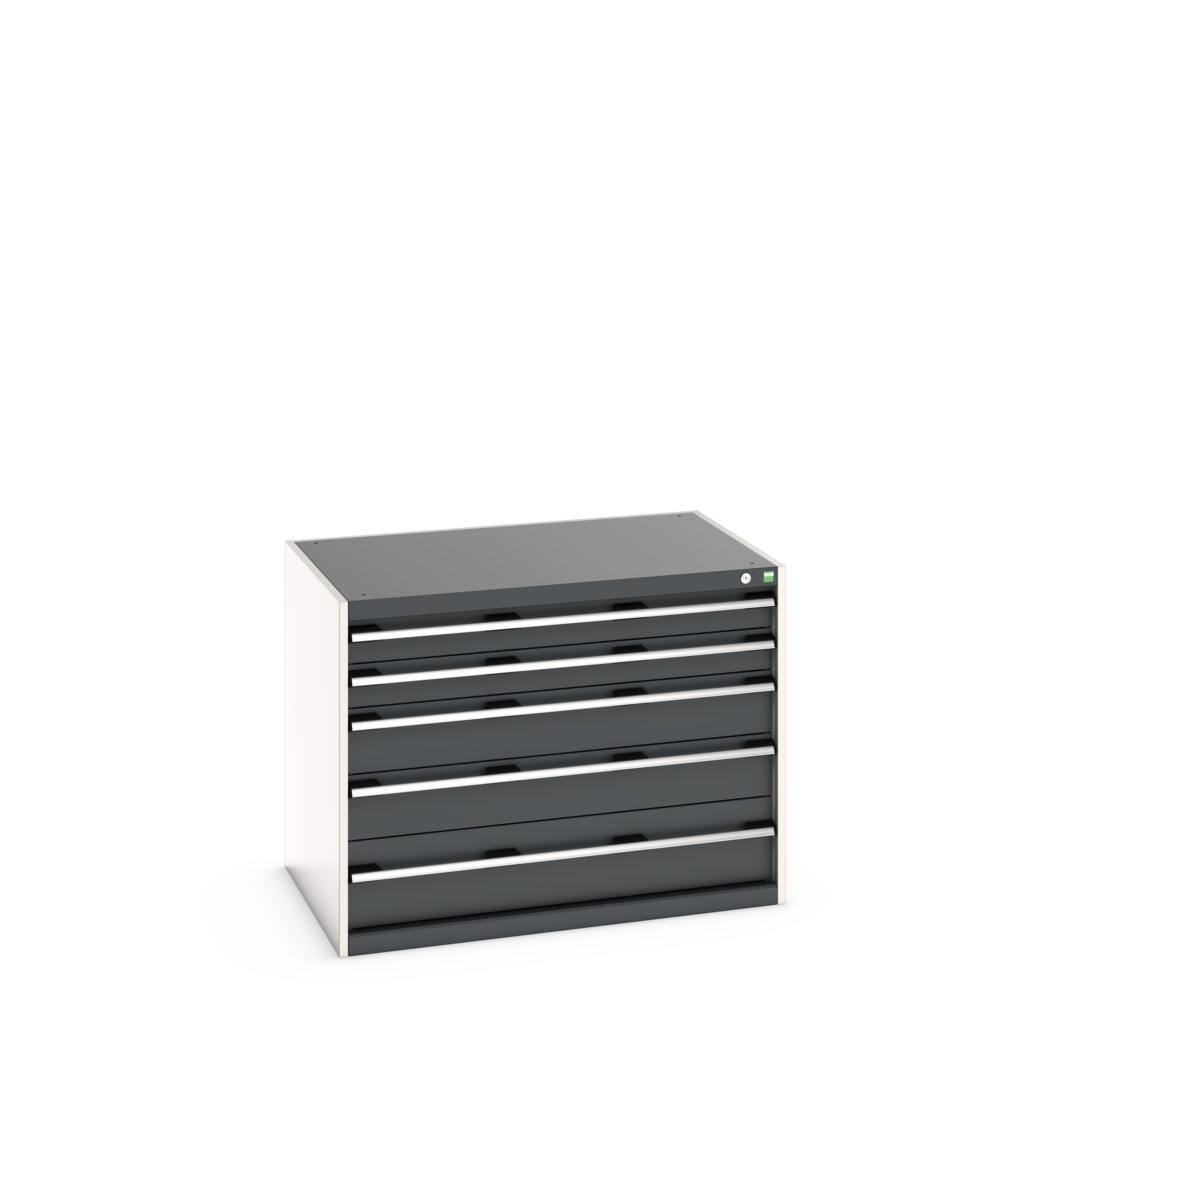 40029010.19V - cubio drawer cabinet